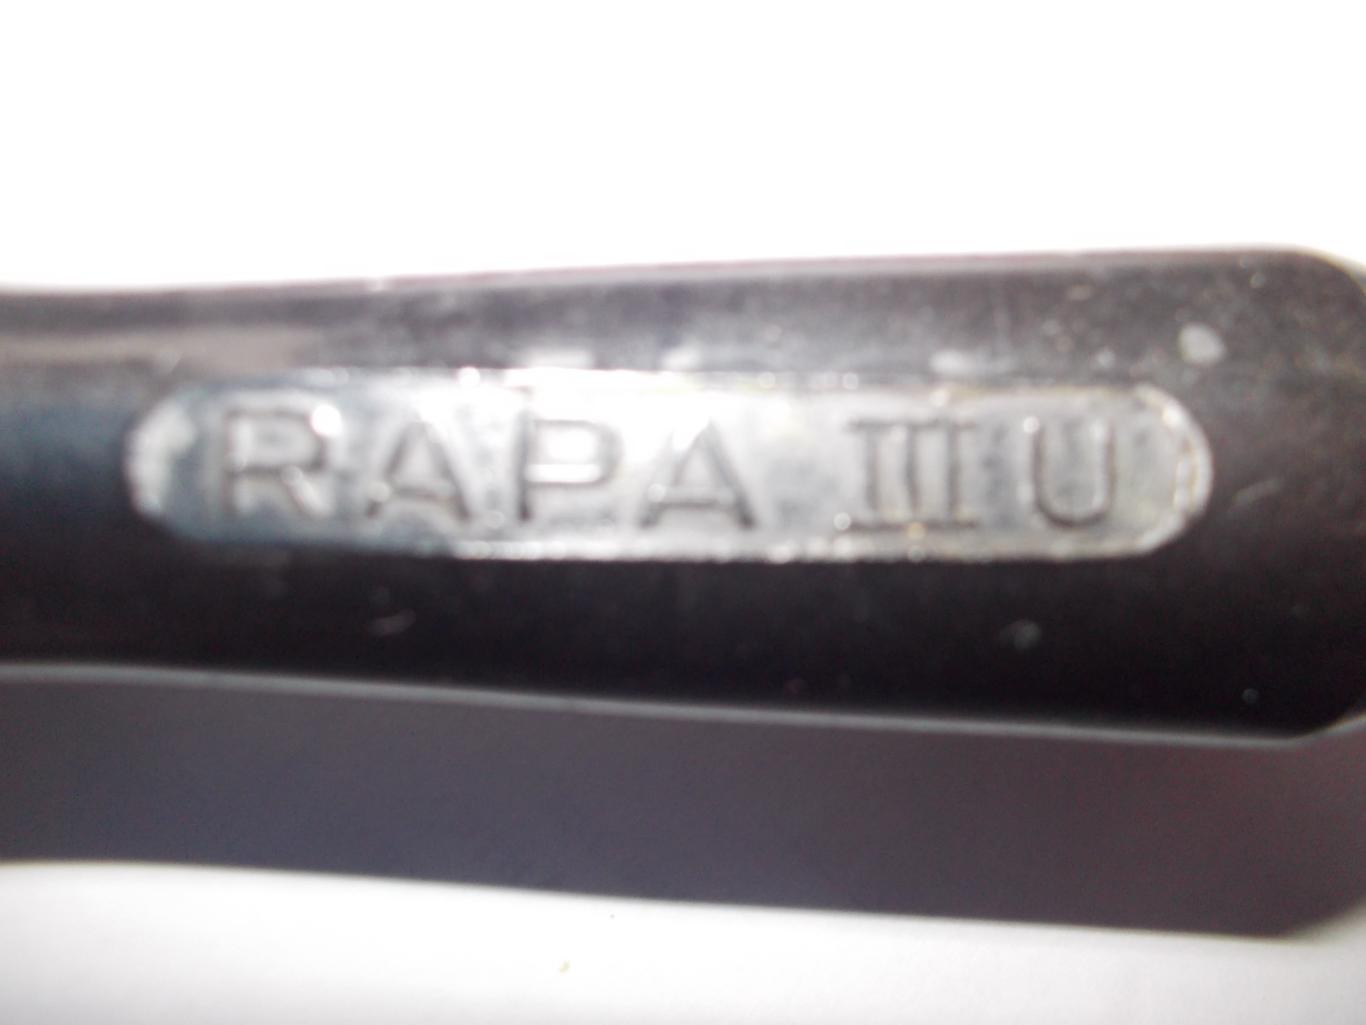 Индикатор напряжения германский RAPA lll U. 1947год. Редкий экземпляр. 2